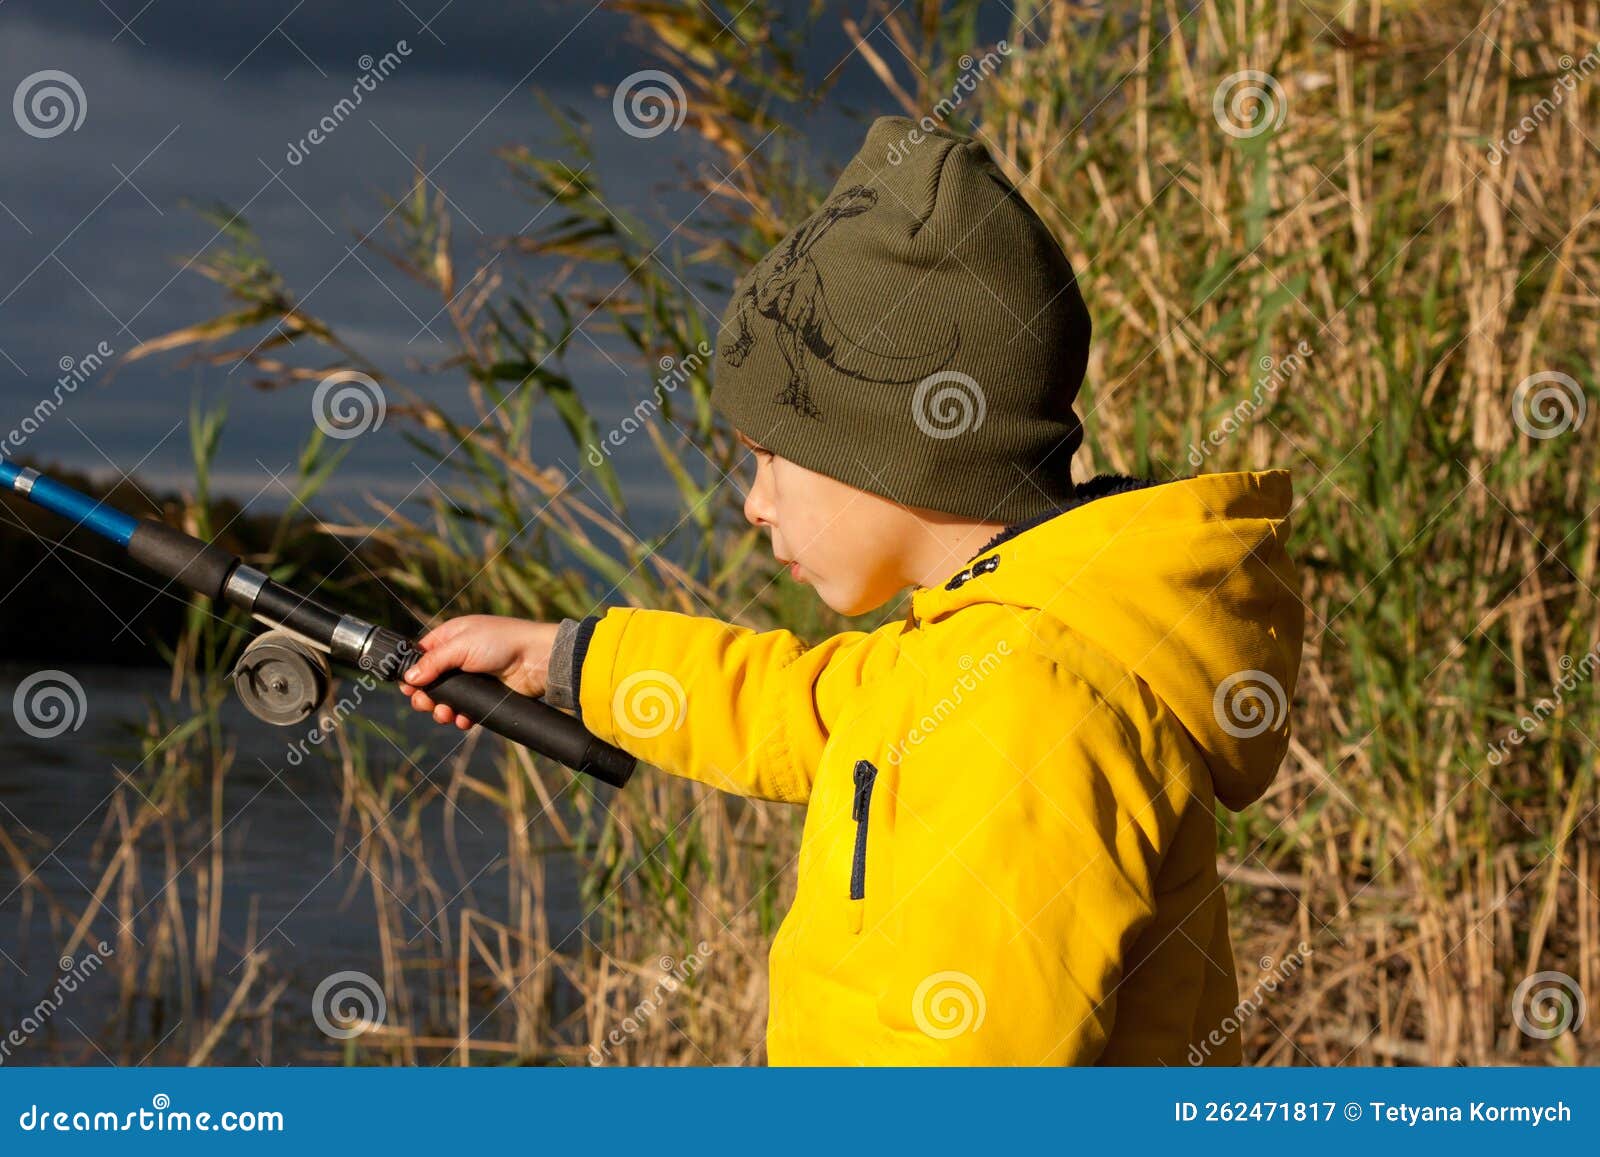 Young Fisherman. Preschooler Boy, Dressed in Yellow Jacket, is